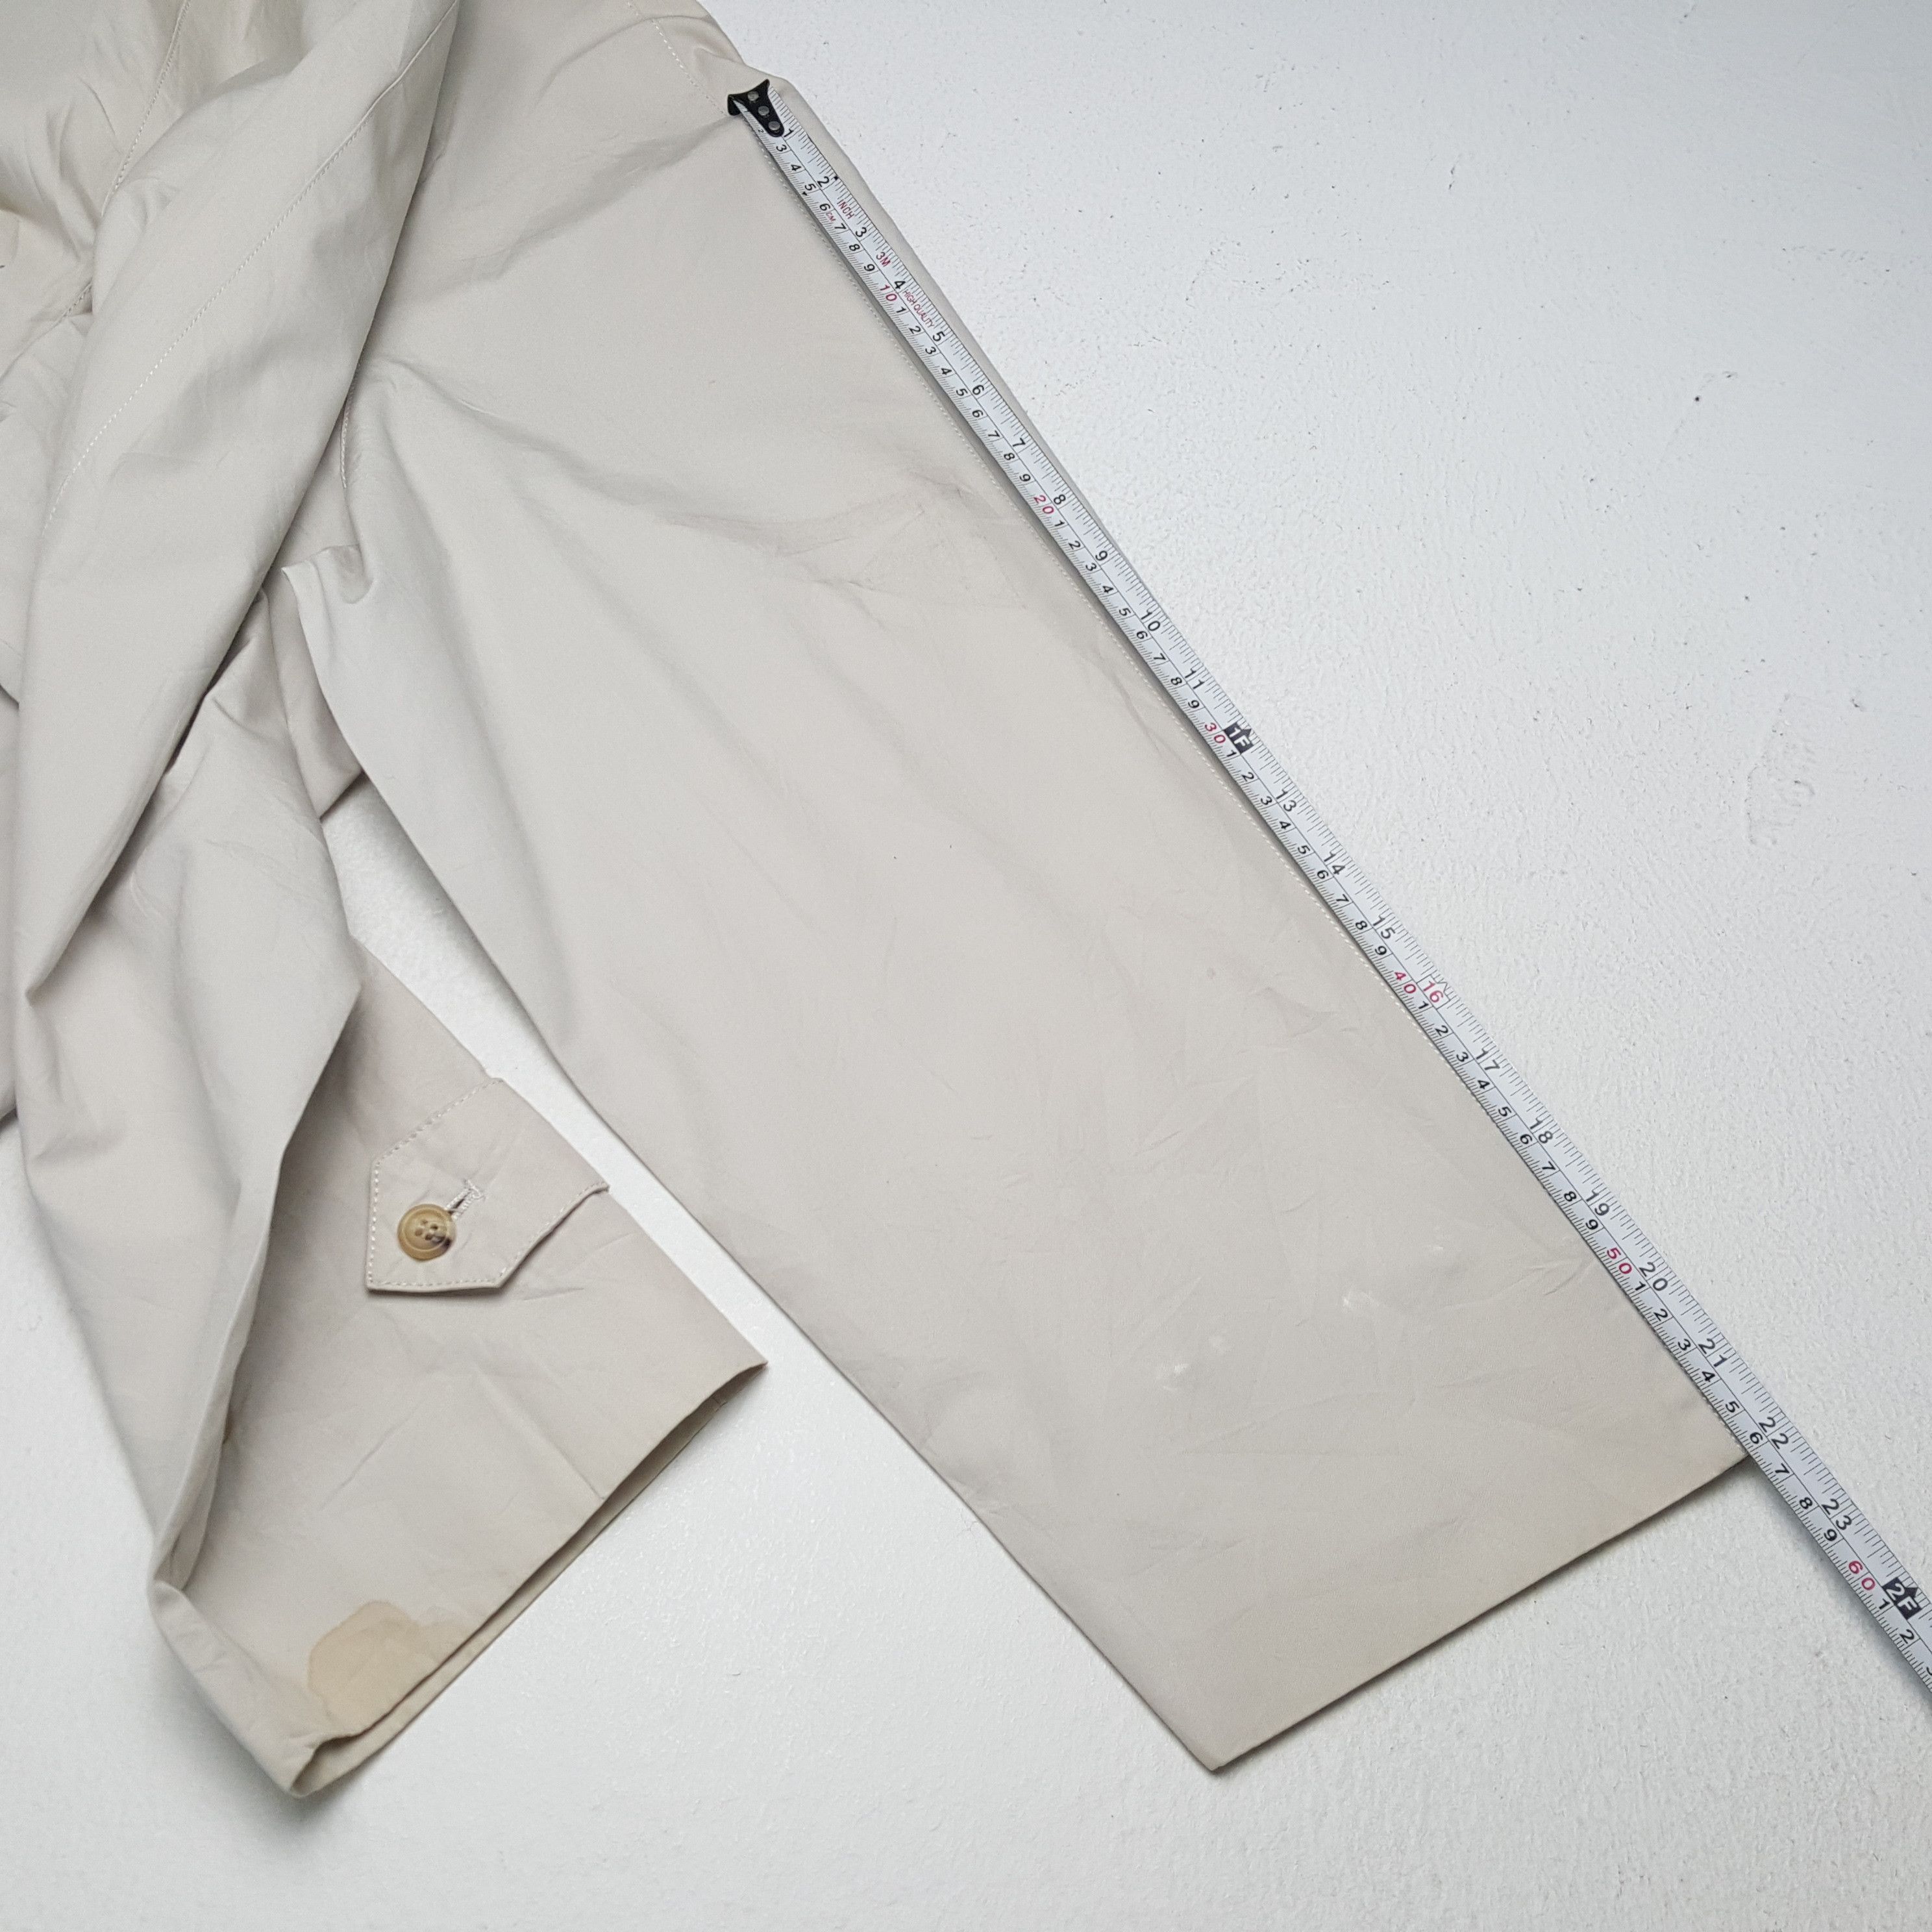 Vintage BARACUTA British Style Long Vintage Jacket Size US XL / EU 56 / 4 - 6 Thumbnail